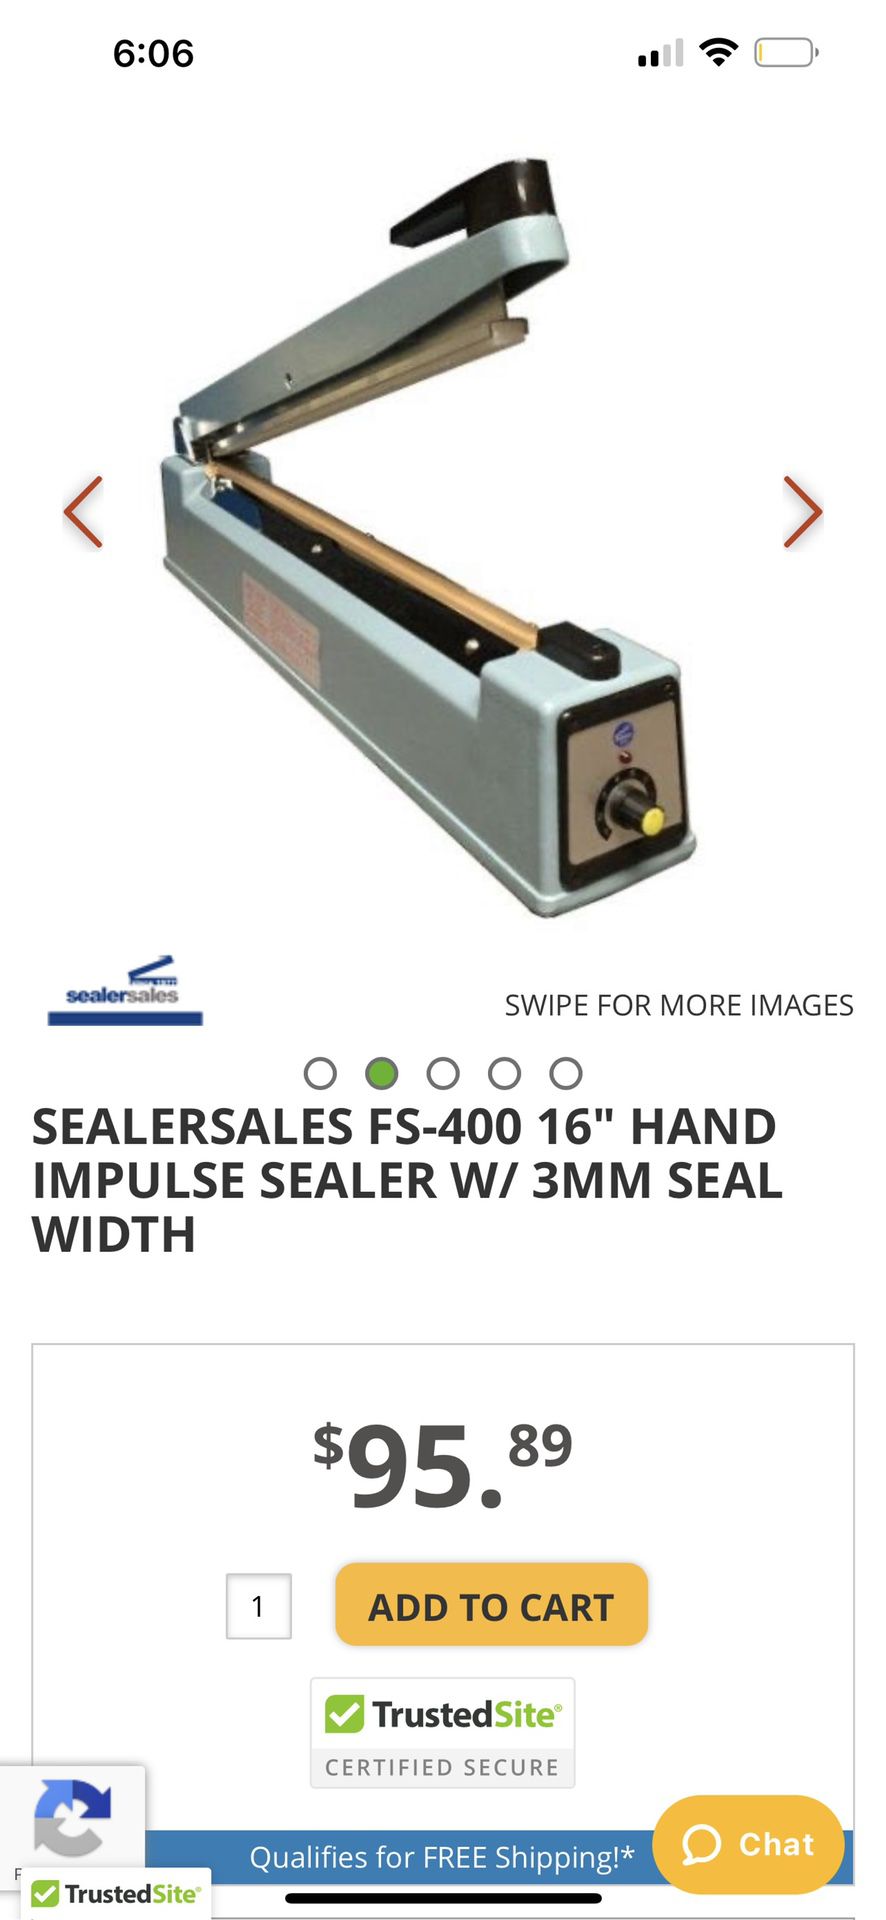 SEALERSALES FS-400 16" HAND IMPULSE SEALER W/ 3MM SEAL WIDTH